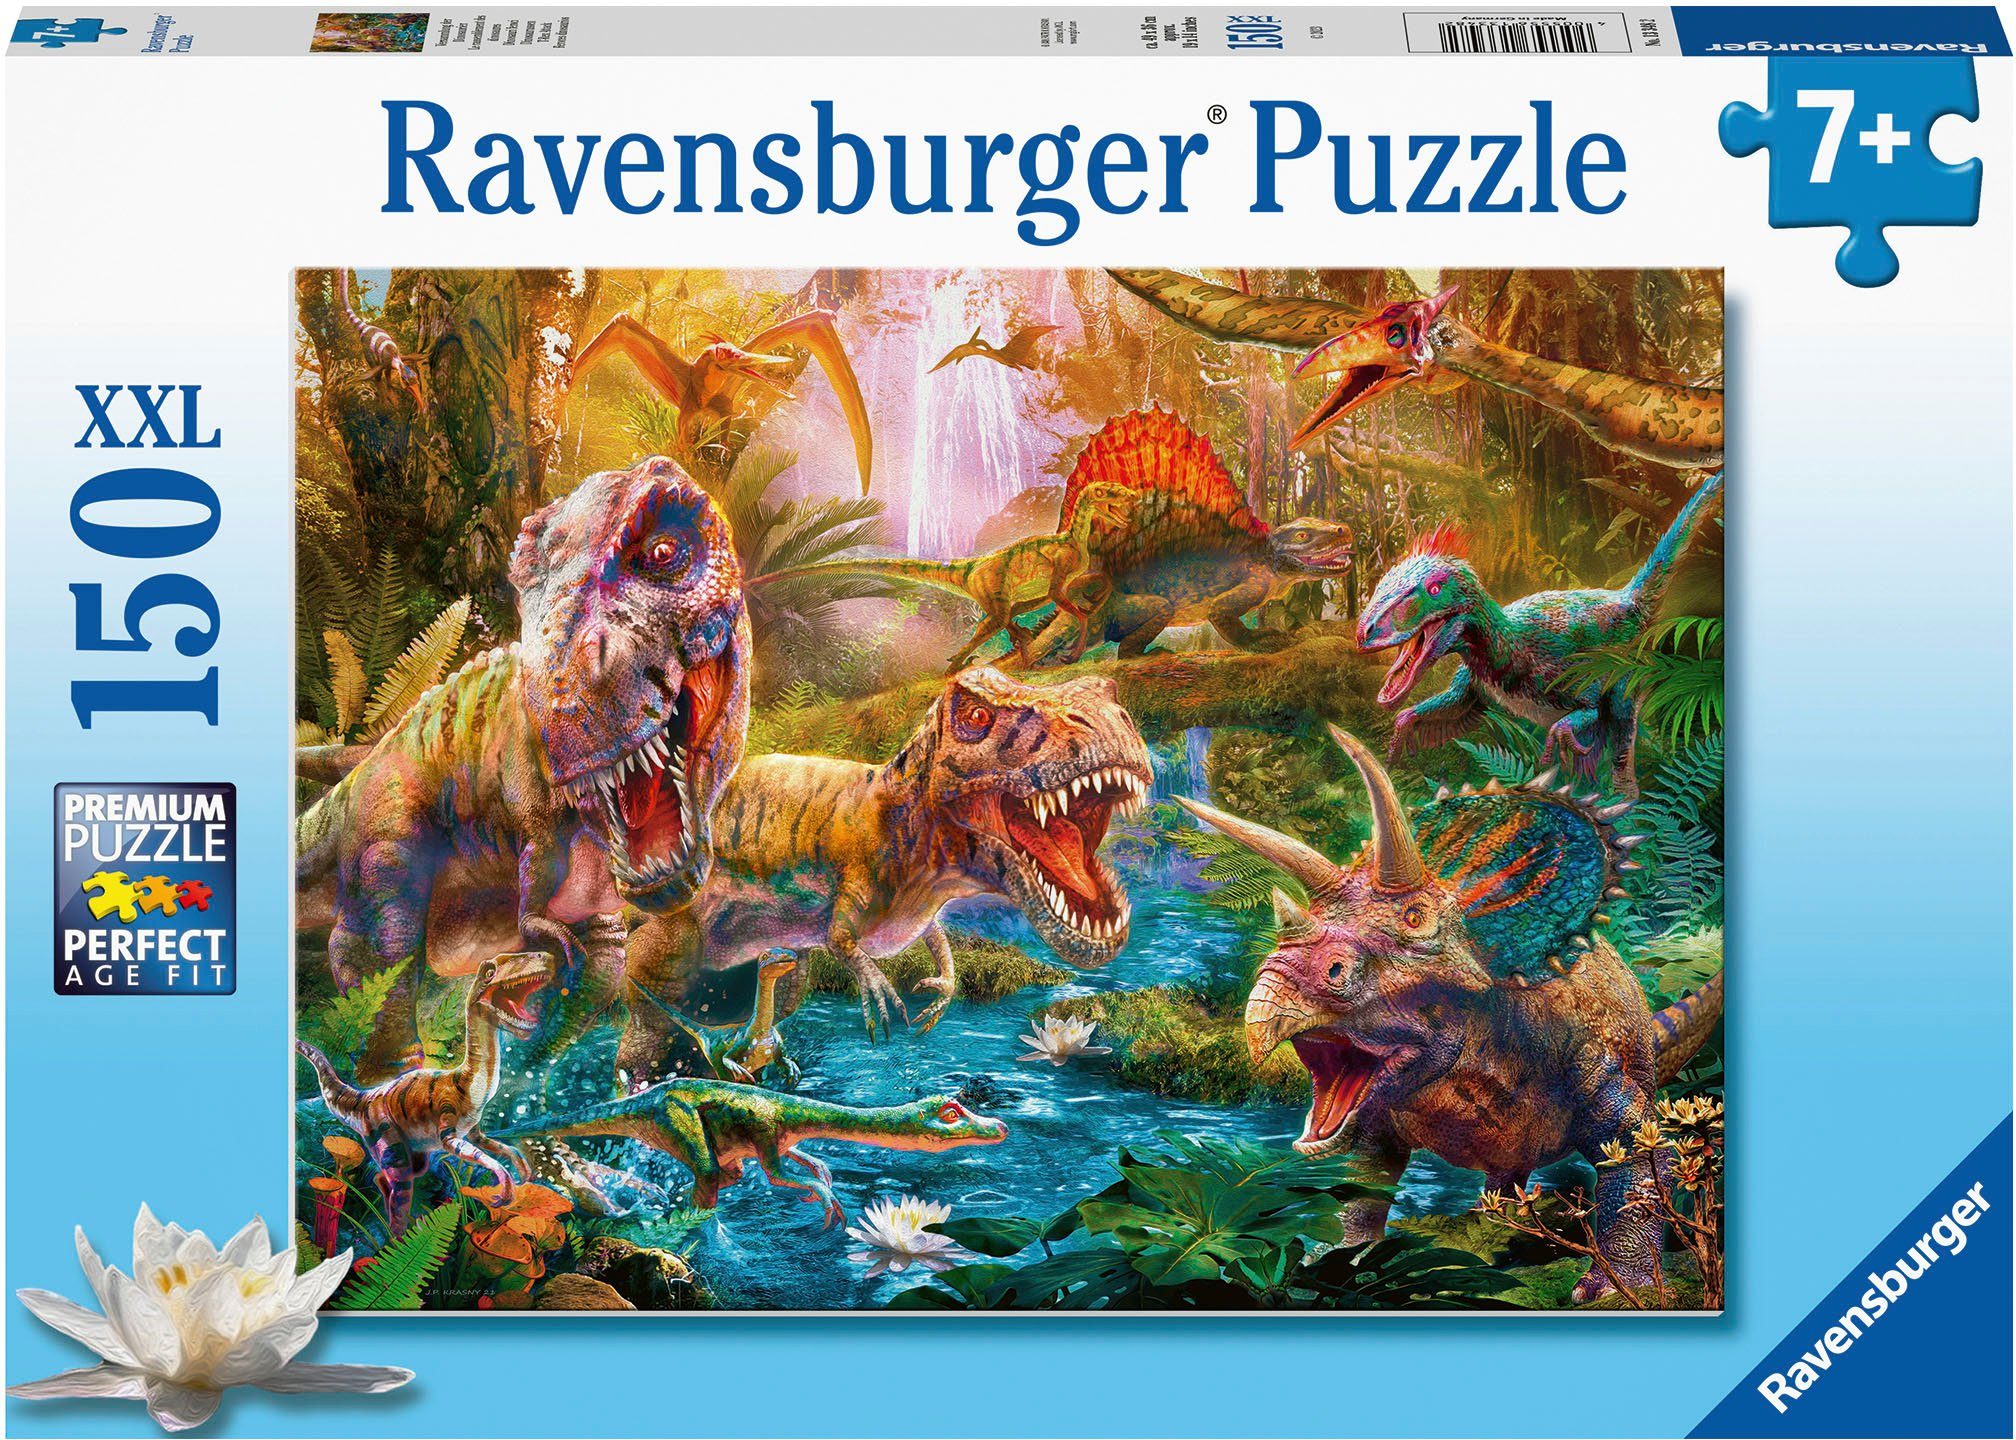 Ravensburger Puzzle Versammlung Made Dinosaurier, - Germany; Wald FSC®- in 150 der Puzzleteile, weltweit schützt